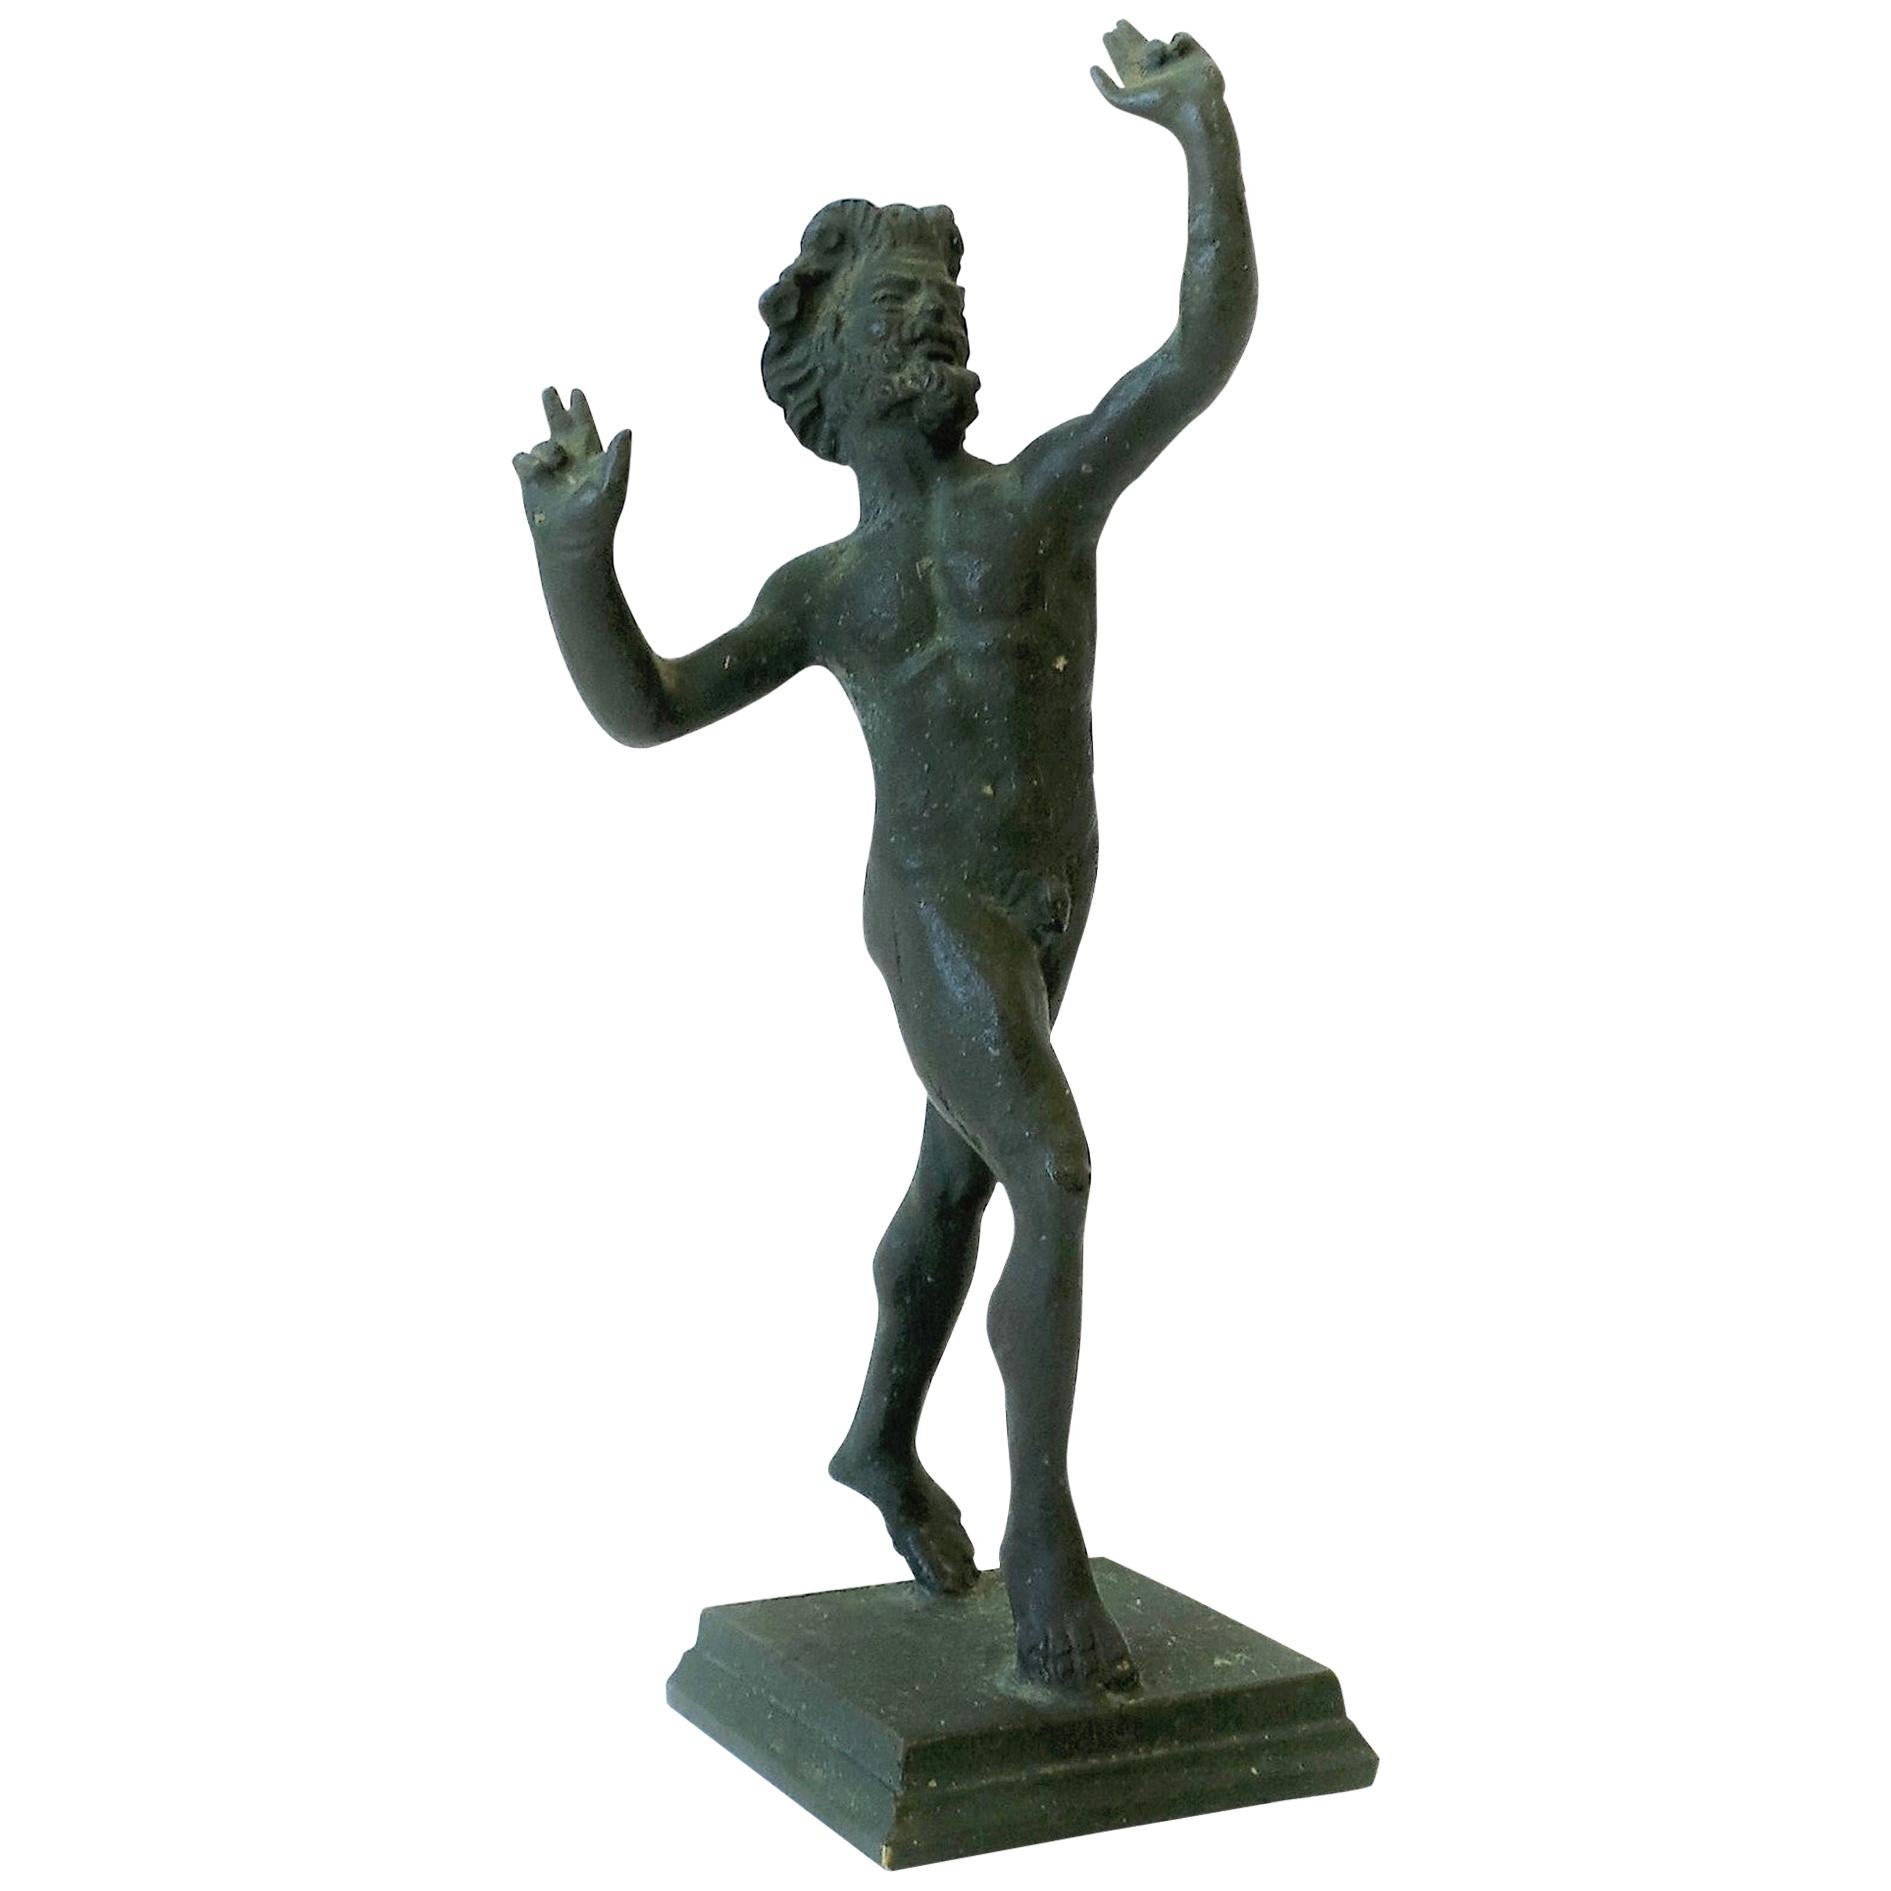 Scultura in bronzo figurata del dio del vino greco Bacco, nudo, statua